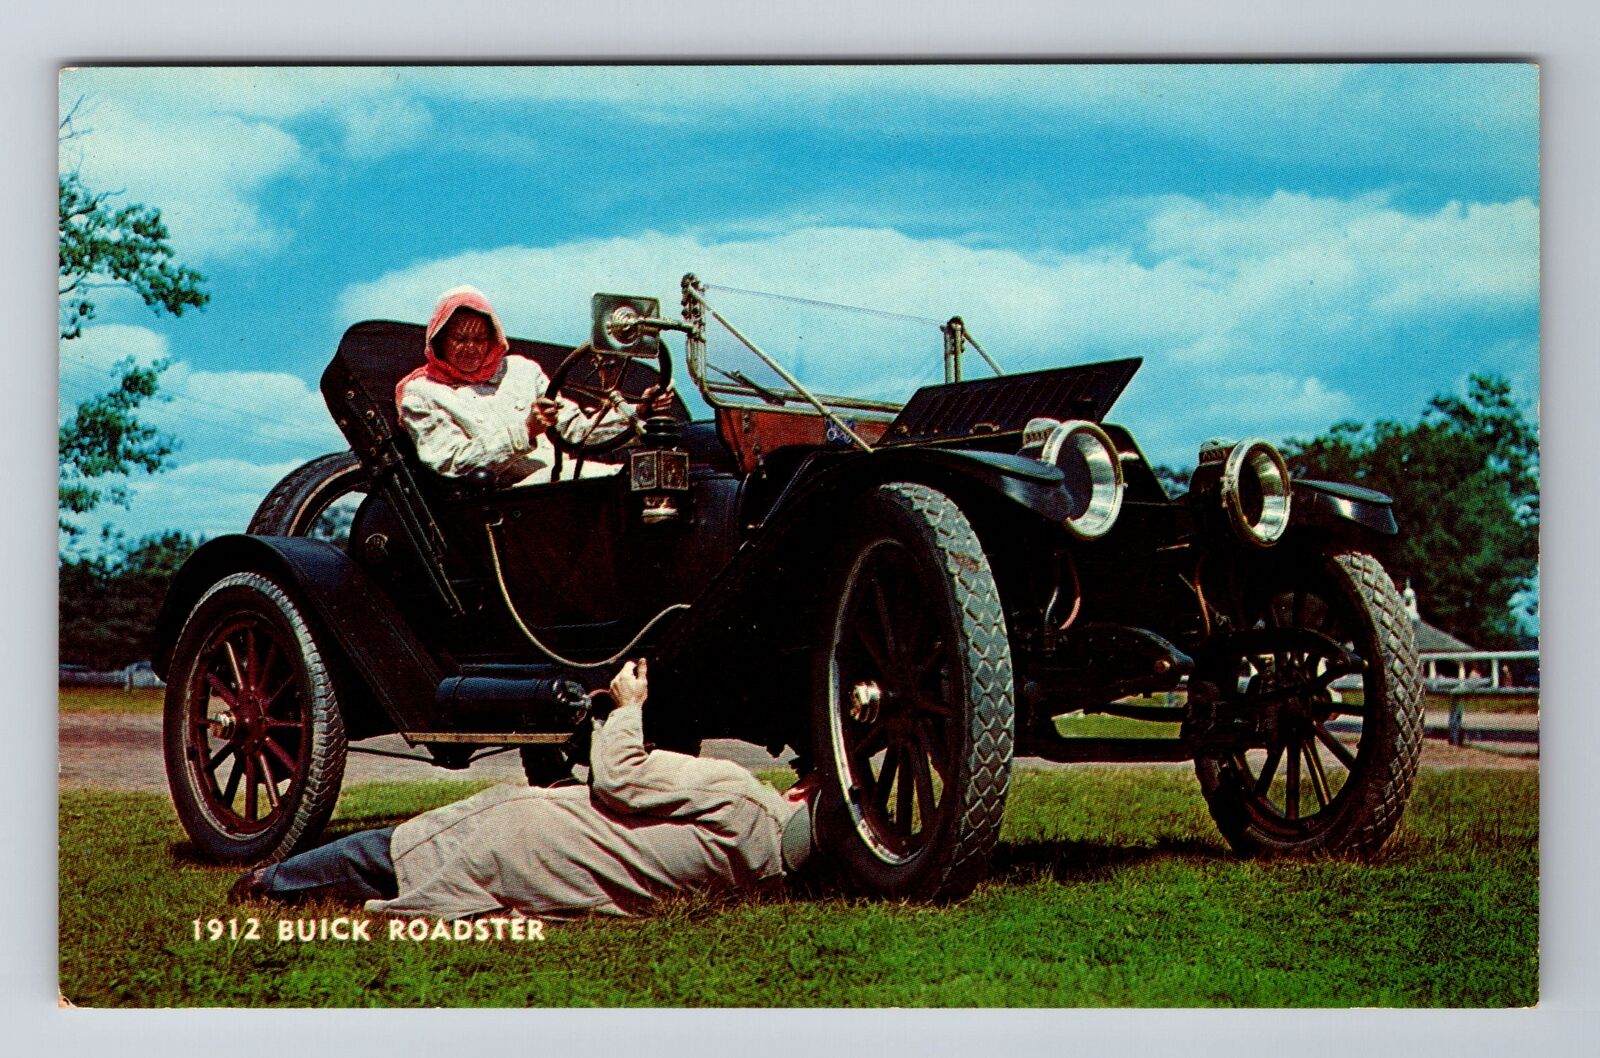 1912 Buick Roadster, Cars, Transportation, Antique Vintage Souvenir Postcard